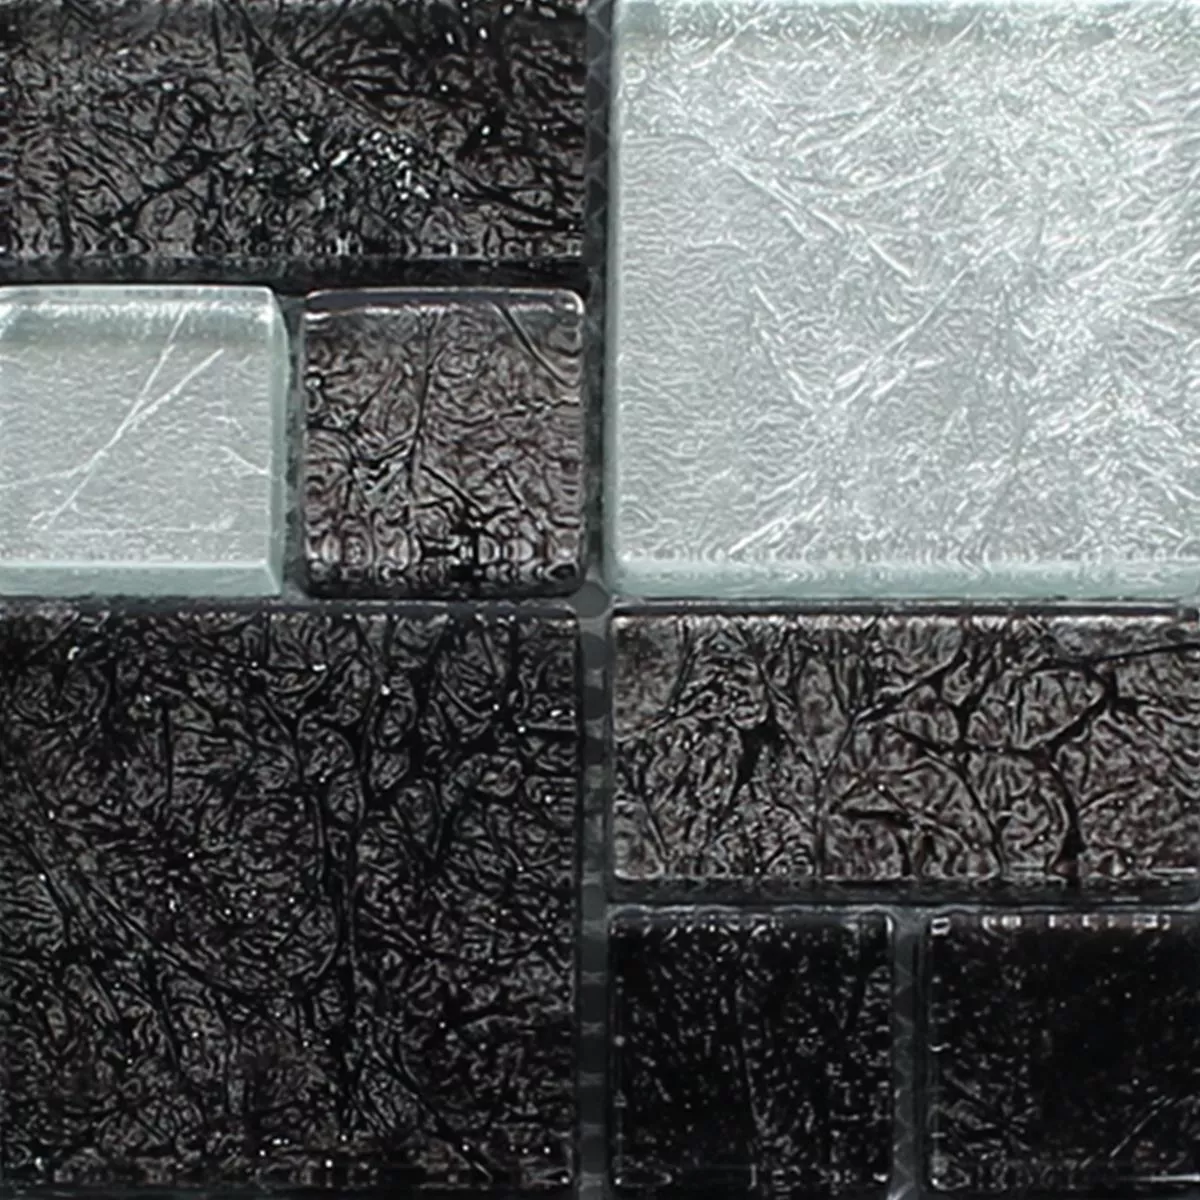 Próbka Mozaika Szklana Płytki Curlew Czarny Srebrny ix